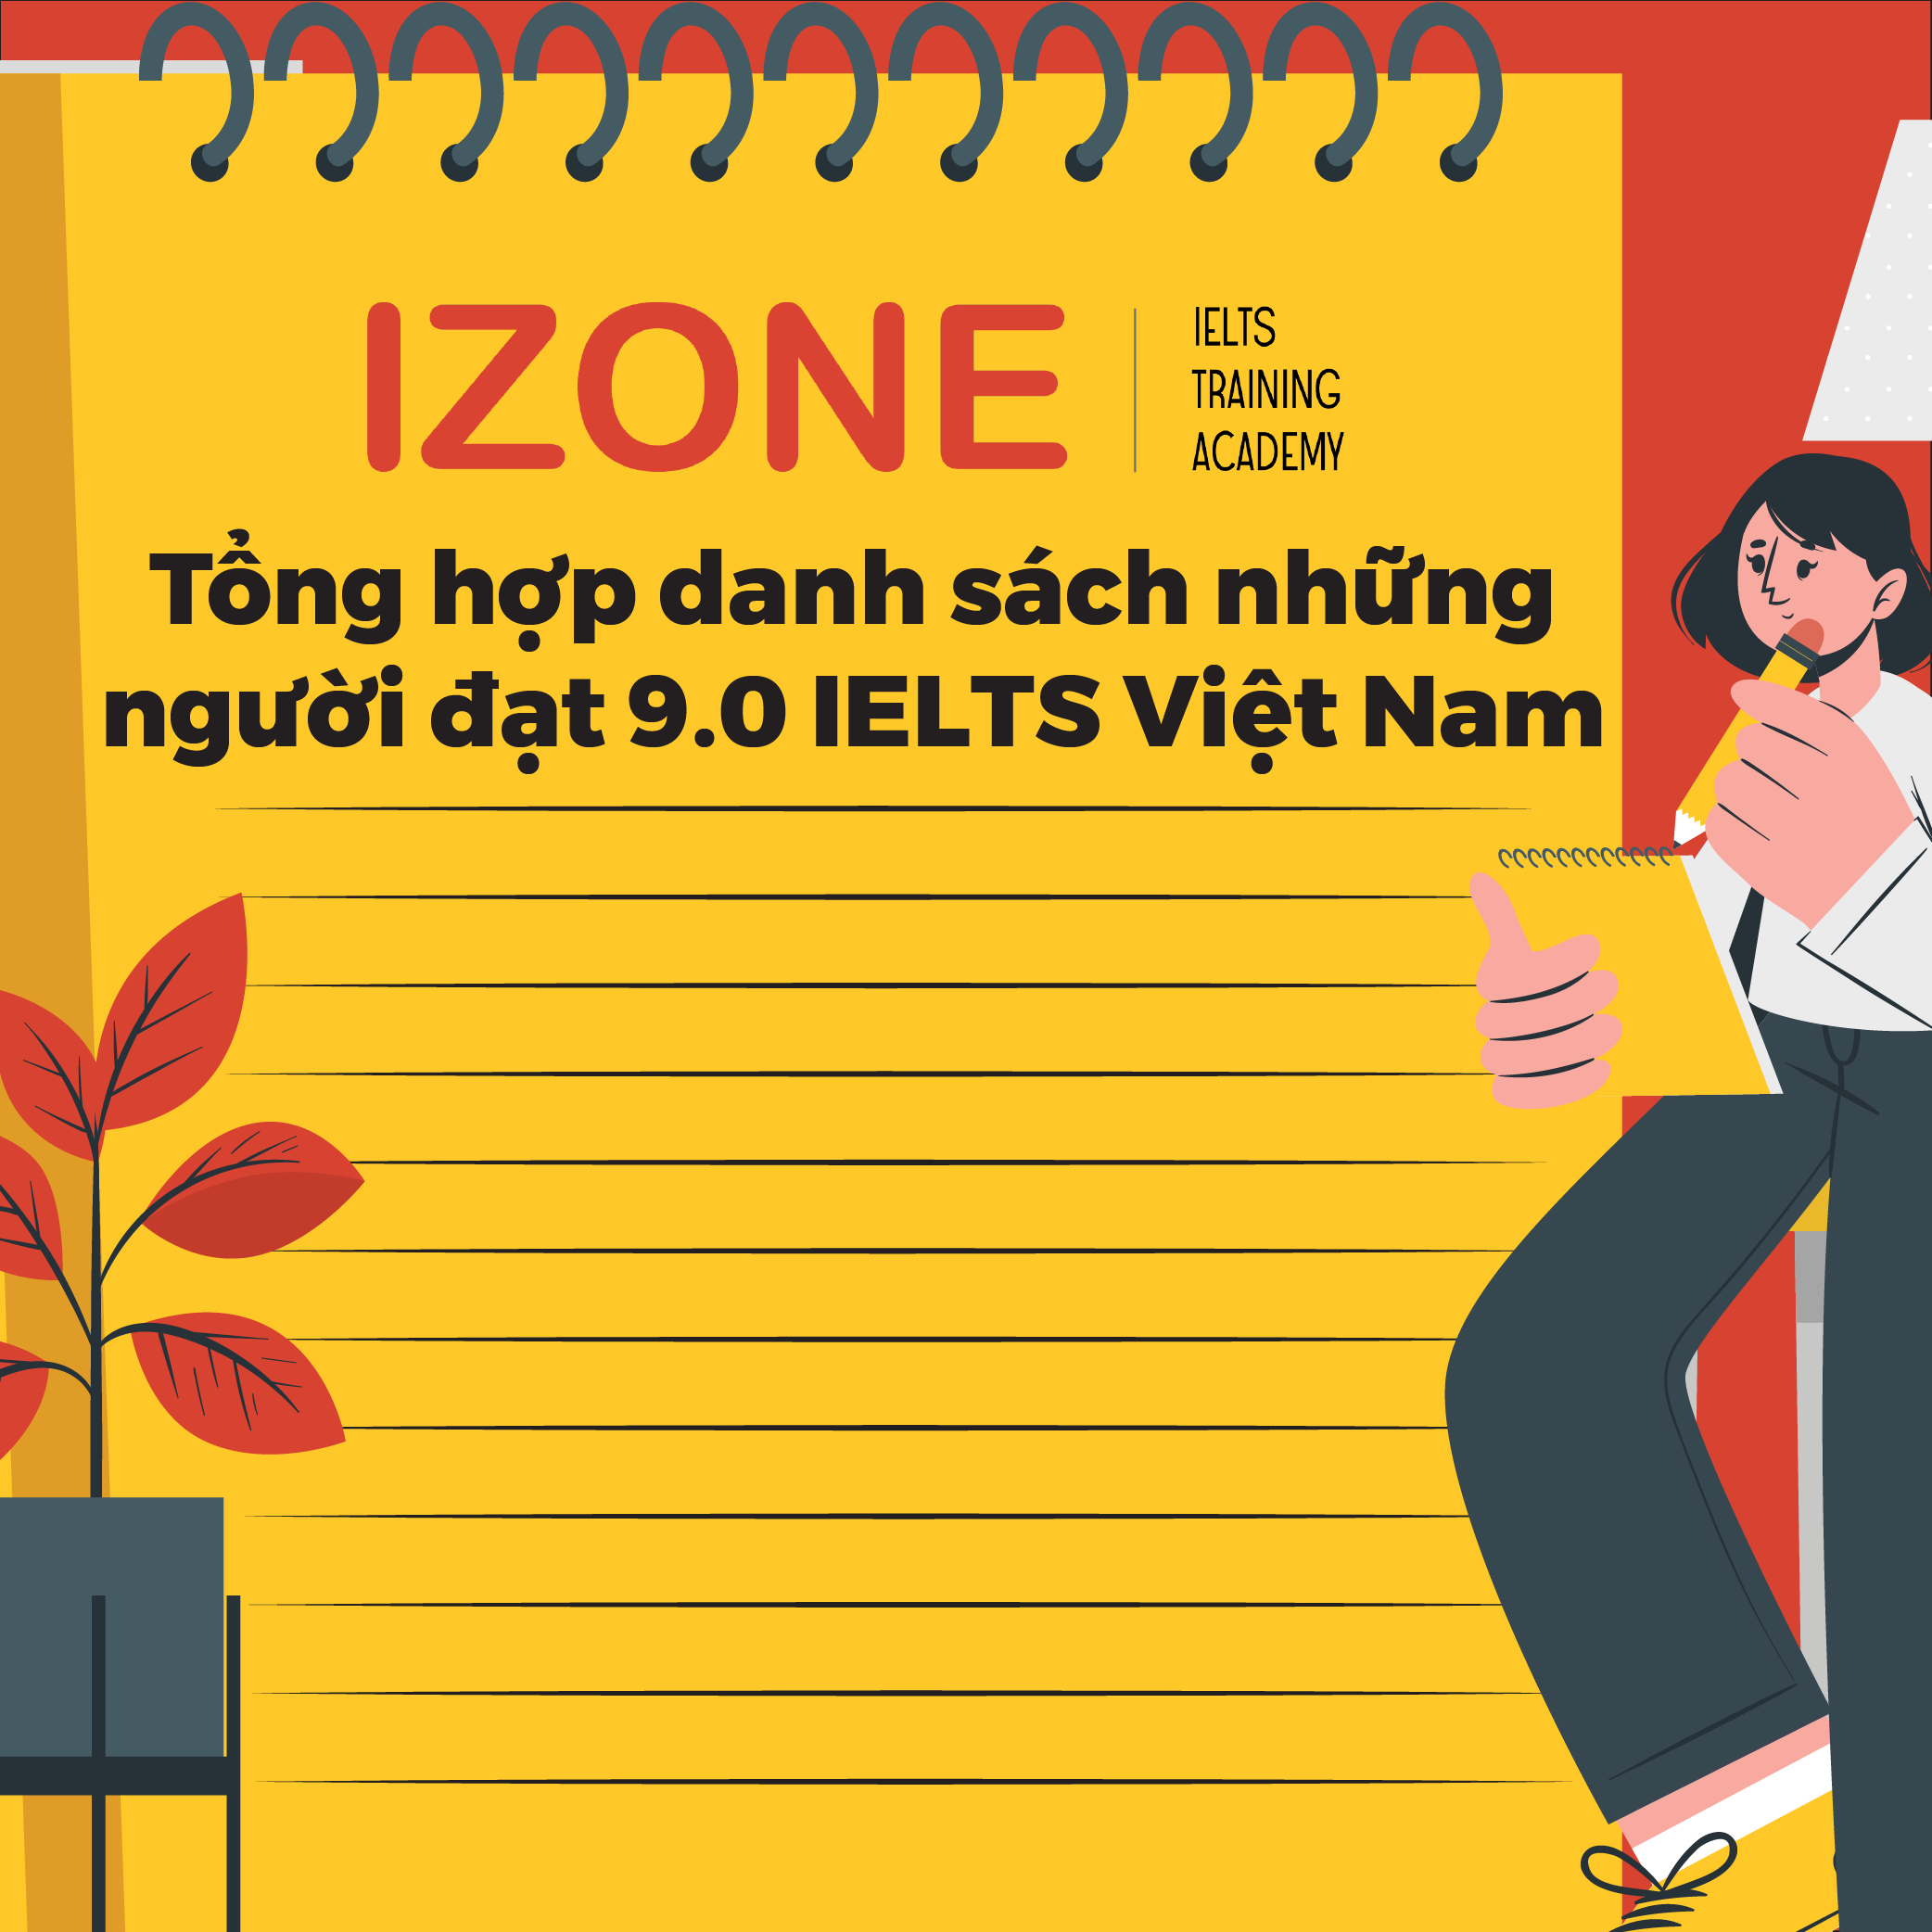 Tổng hợp danh sách những người đạt 9.0 IELTS Việt Nam